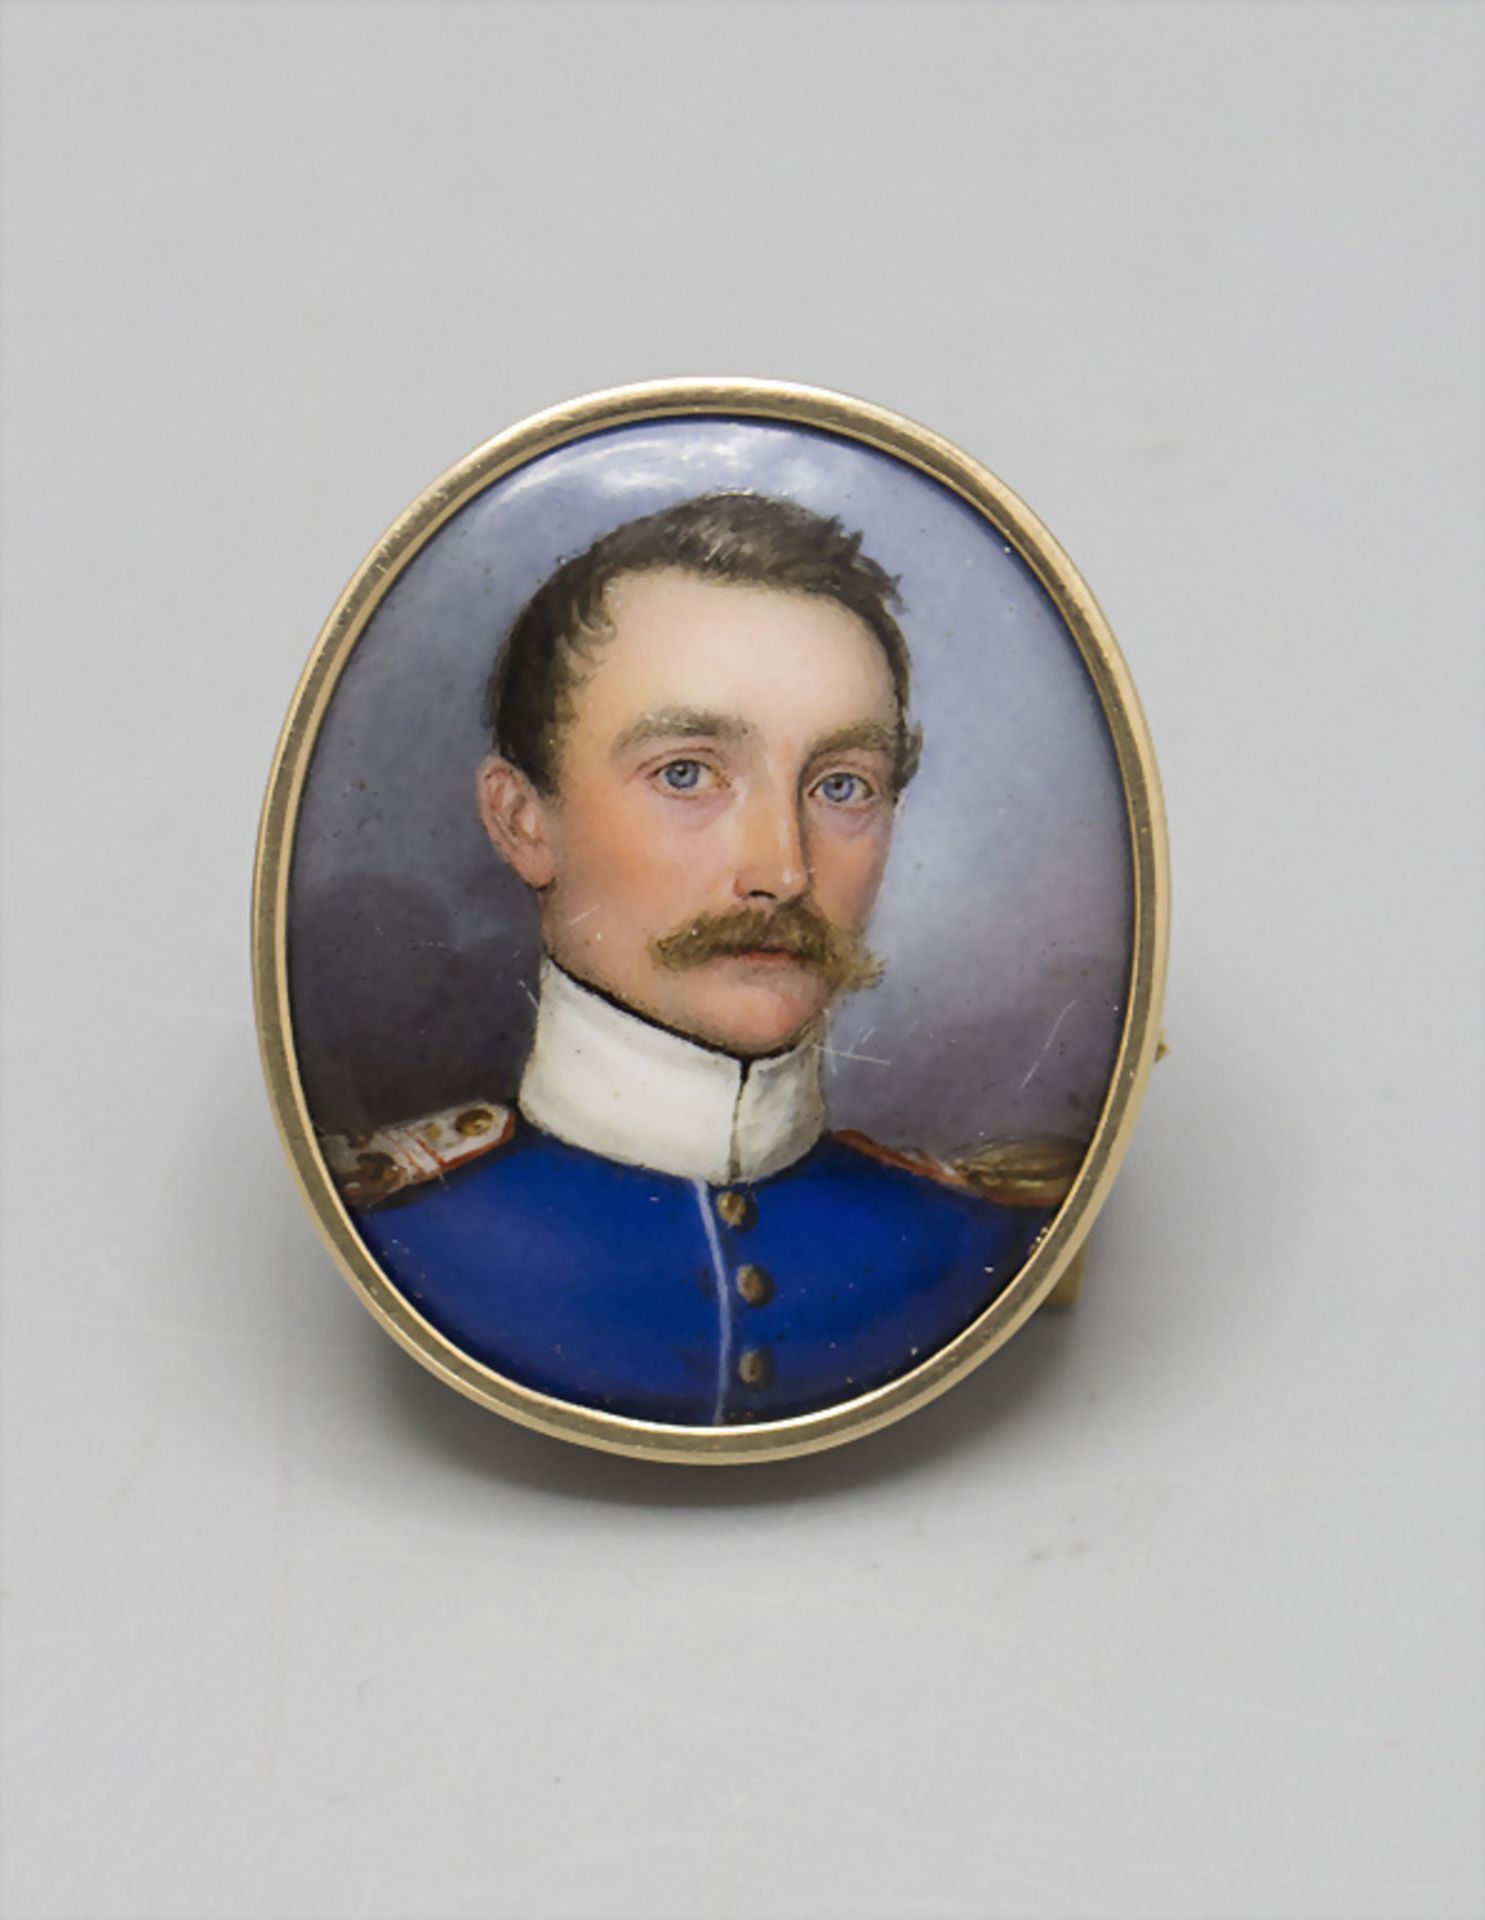 Empire Miniatur 'Offizier' / An Empire miniature portrait of an officer, um 1800 - Bild 2 aus 4